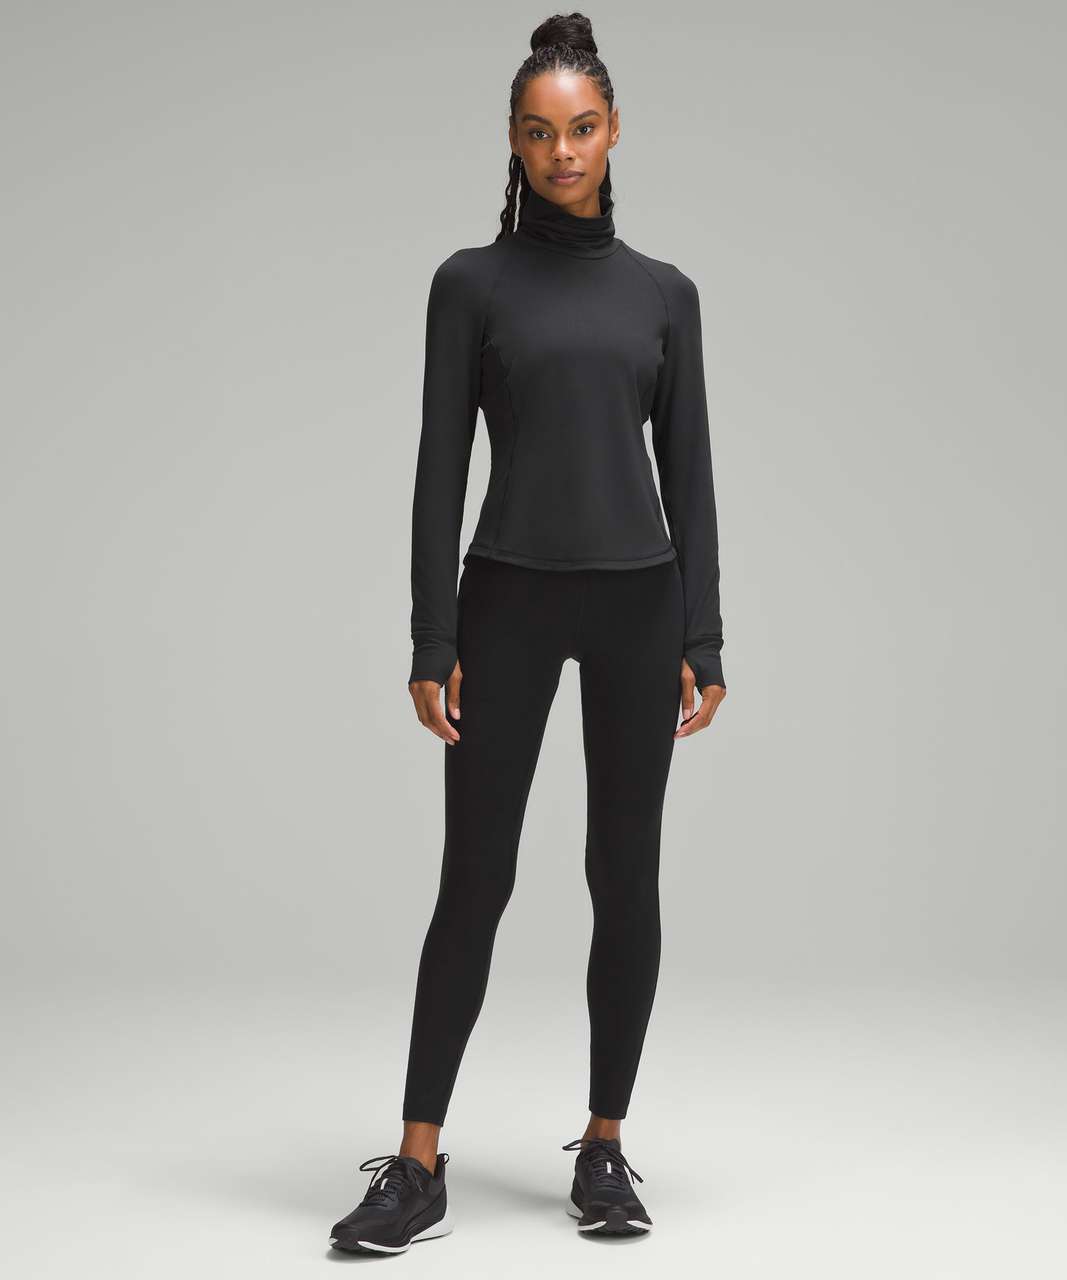 Lululemon Star Runner Long Sleeve Black Rulu Reflective Top Shirt  Women'sSize: 6